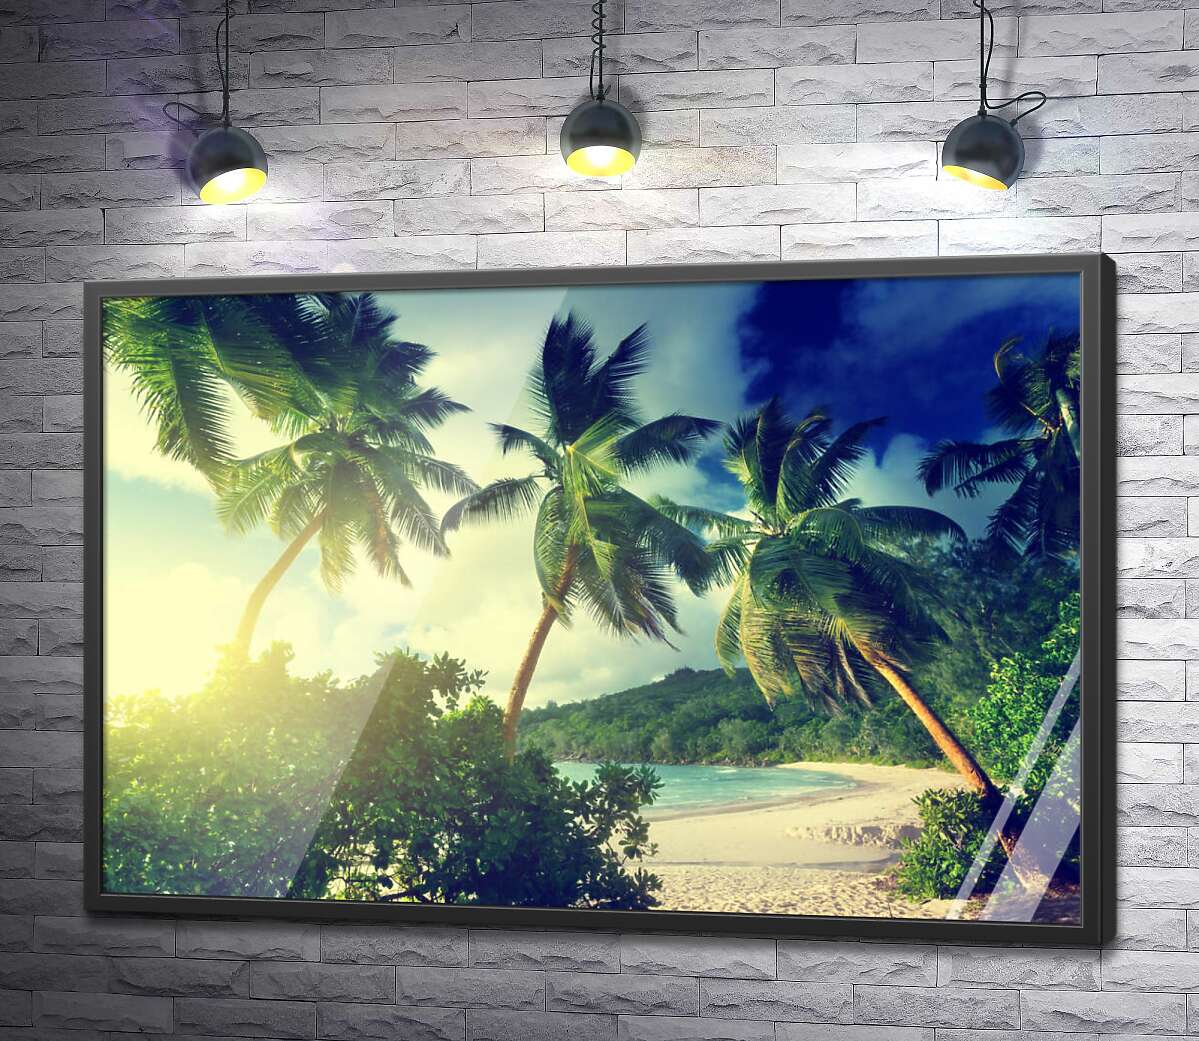 постер Солнечный пляж скрылся за зелеными кустами и пальмами